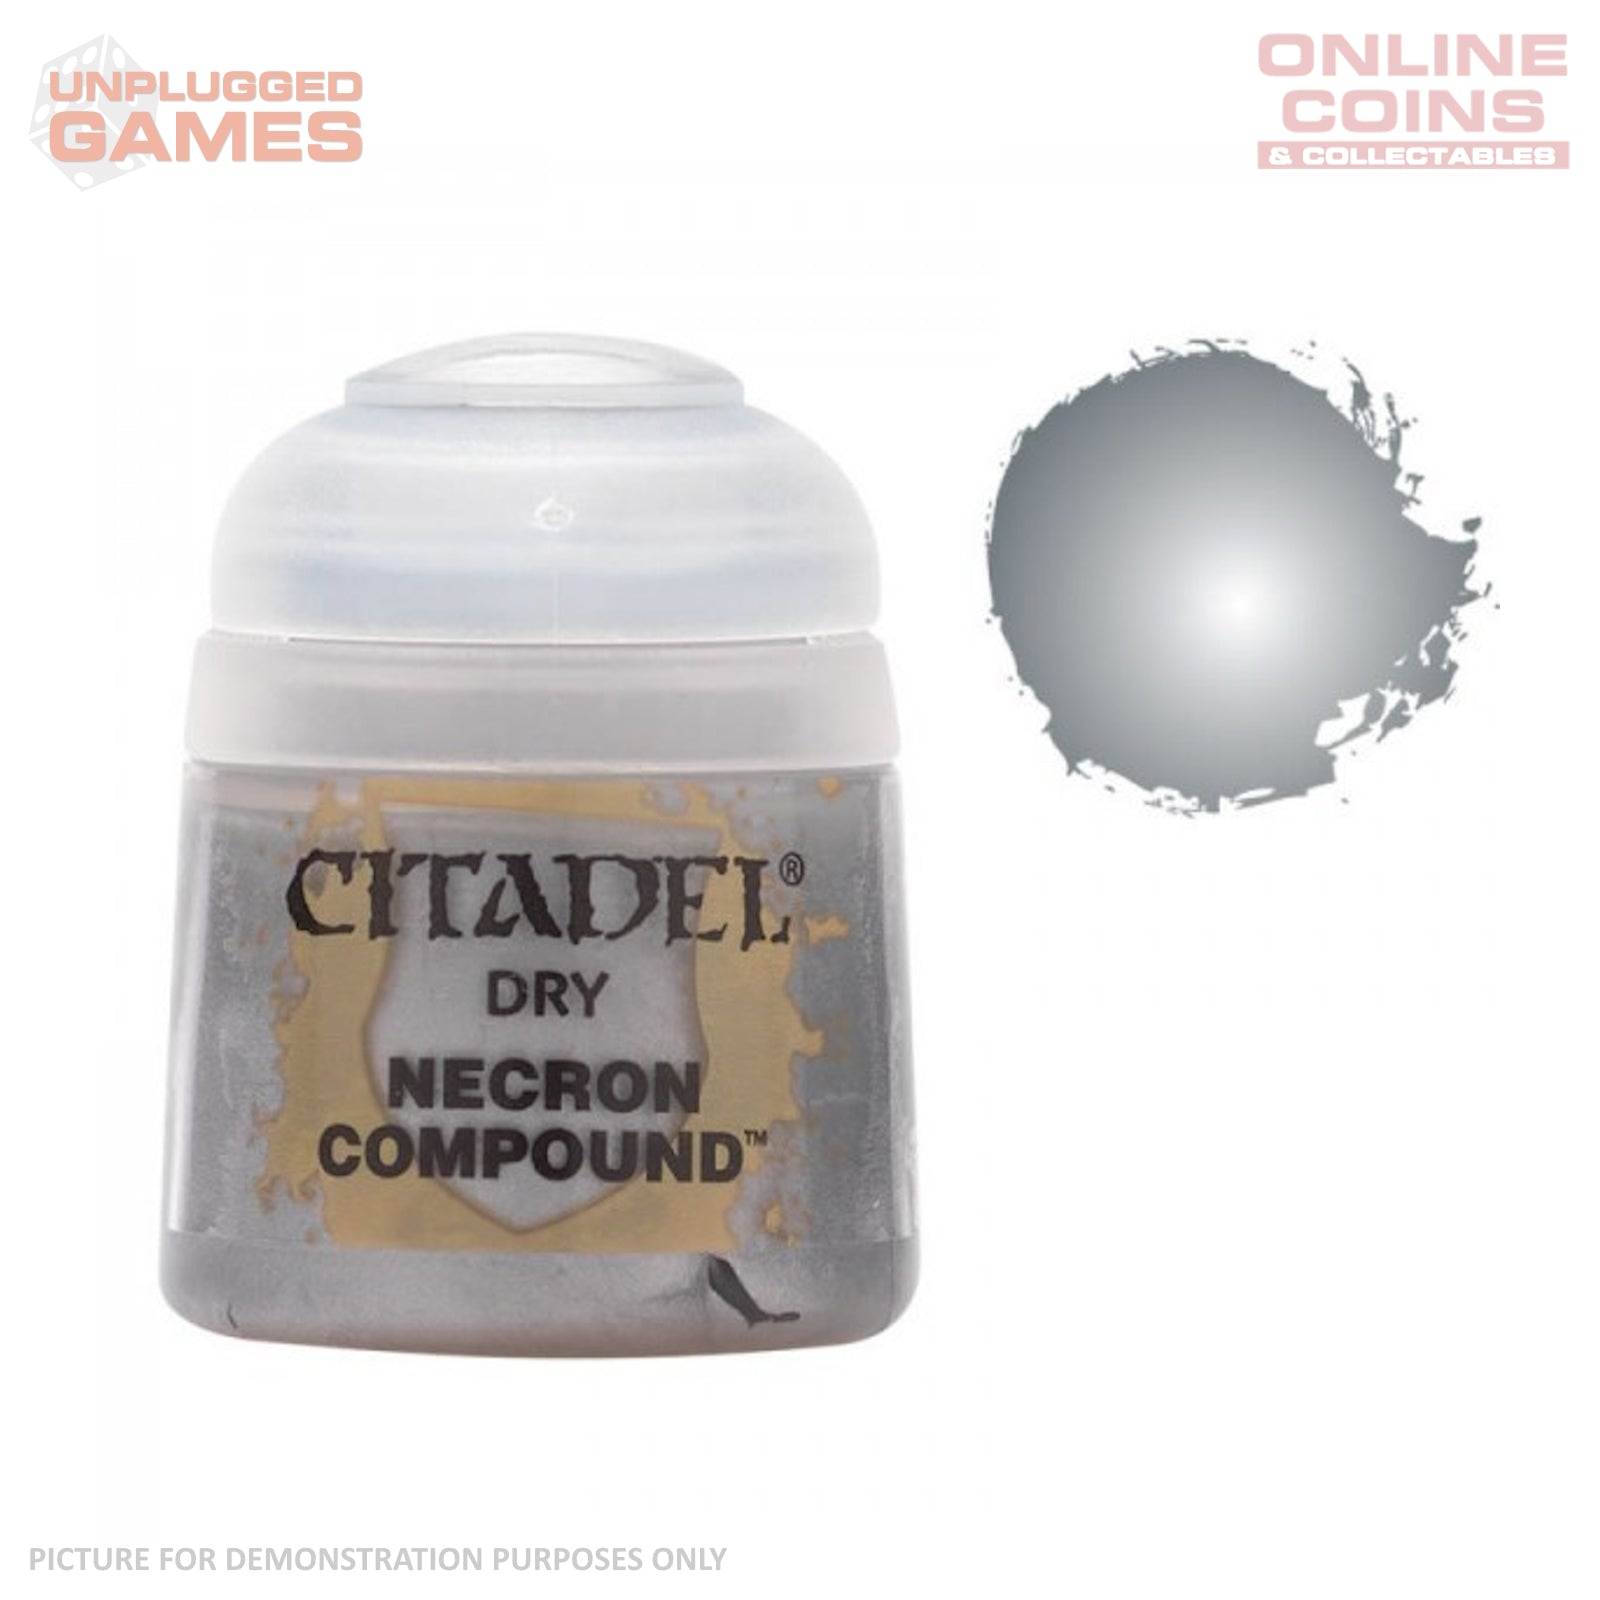 Citadel Dry - 23-13 Necron Compound